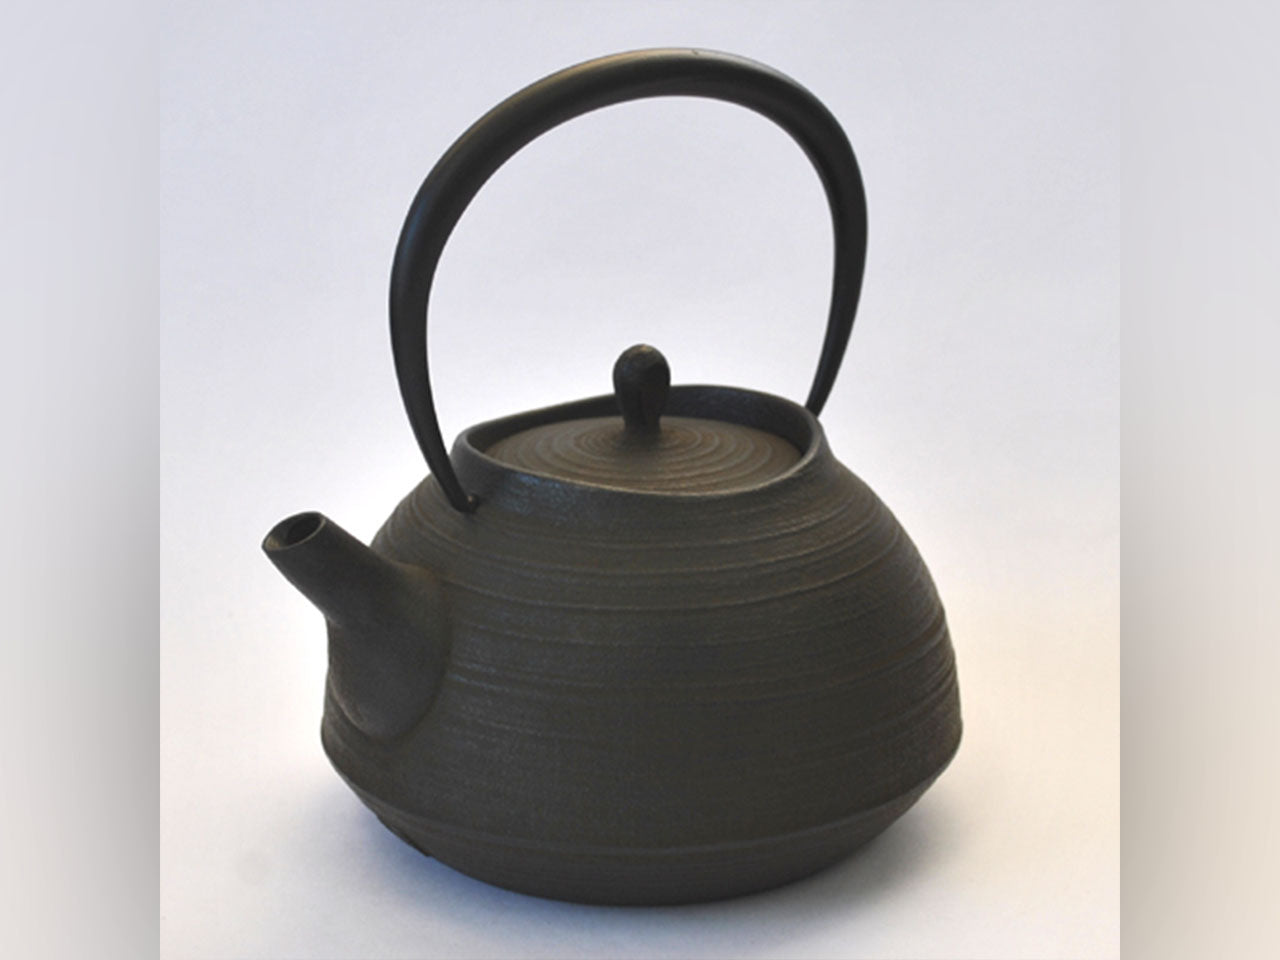 茶具 铁壶 刷毛目 1.3L 棕色 200V电磁炉可用 南部铁器 金属工艺品